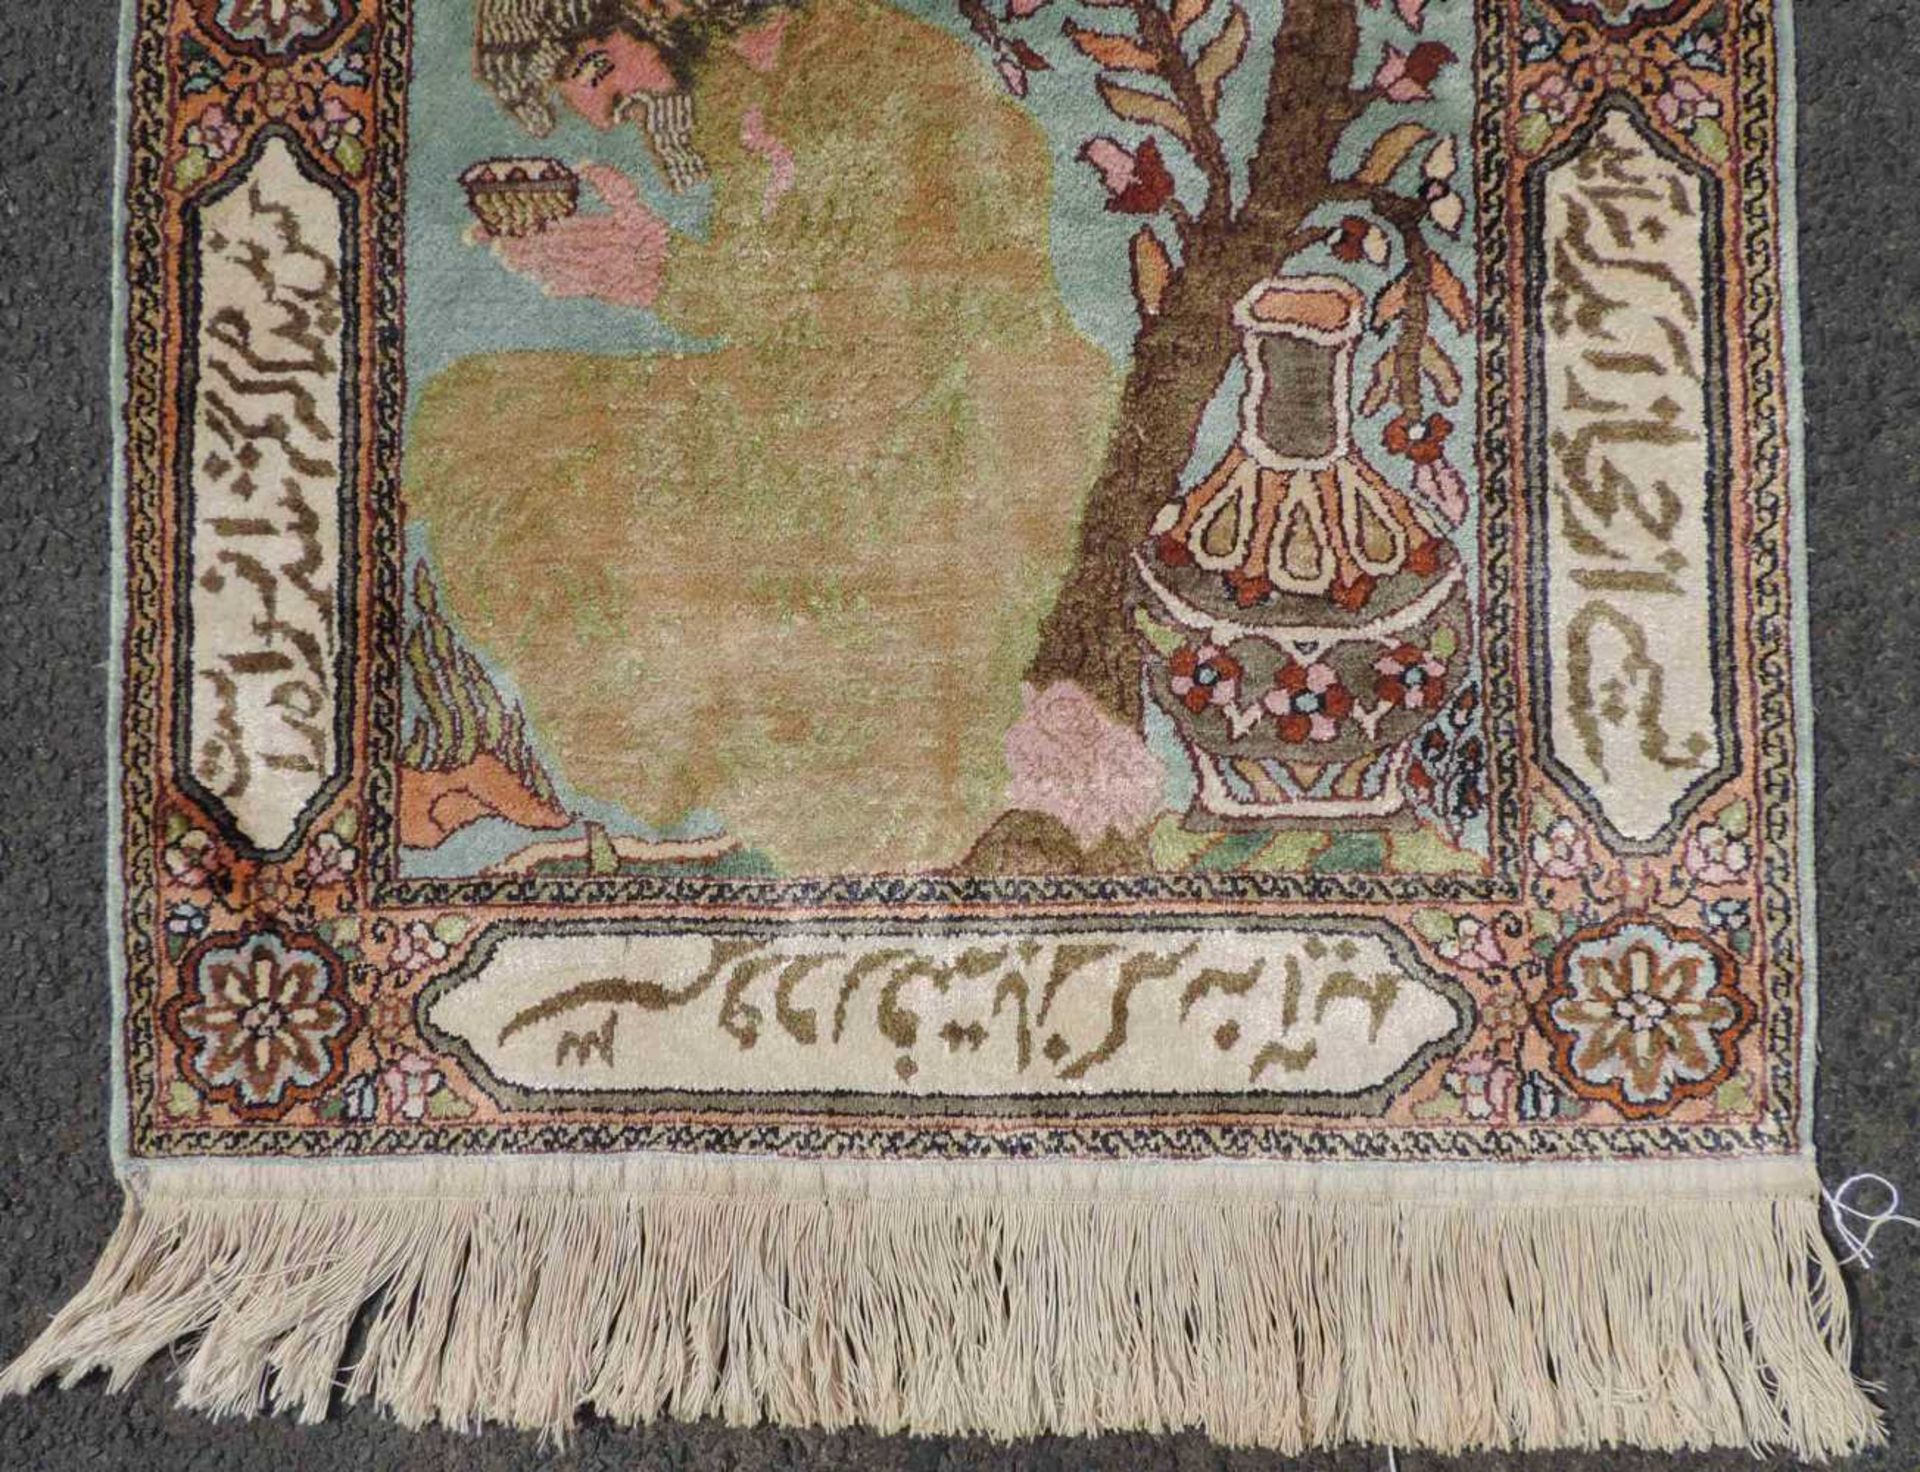 Feiner Bildteppich Seide. Kaschmir, Indien. 95 cm x 65 cm. Handgeknüpft. Flor reine Seide. Guter - Bild 2 aus 7